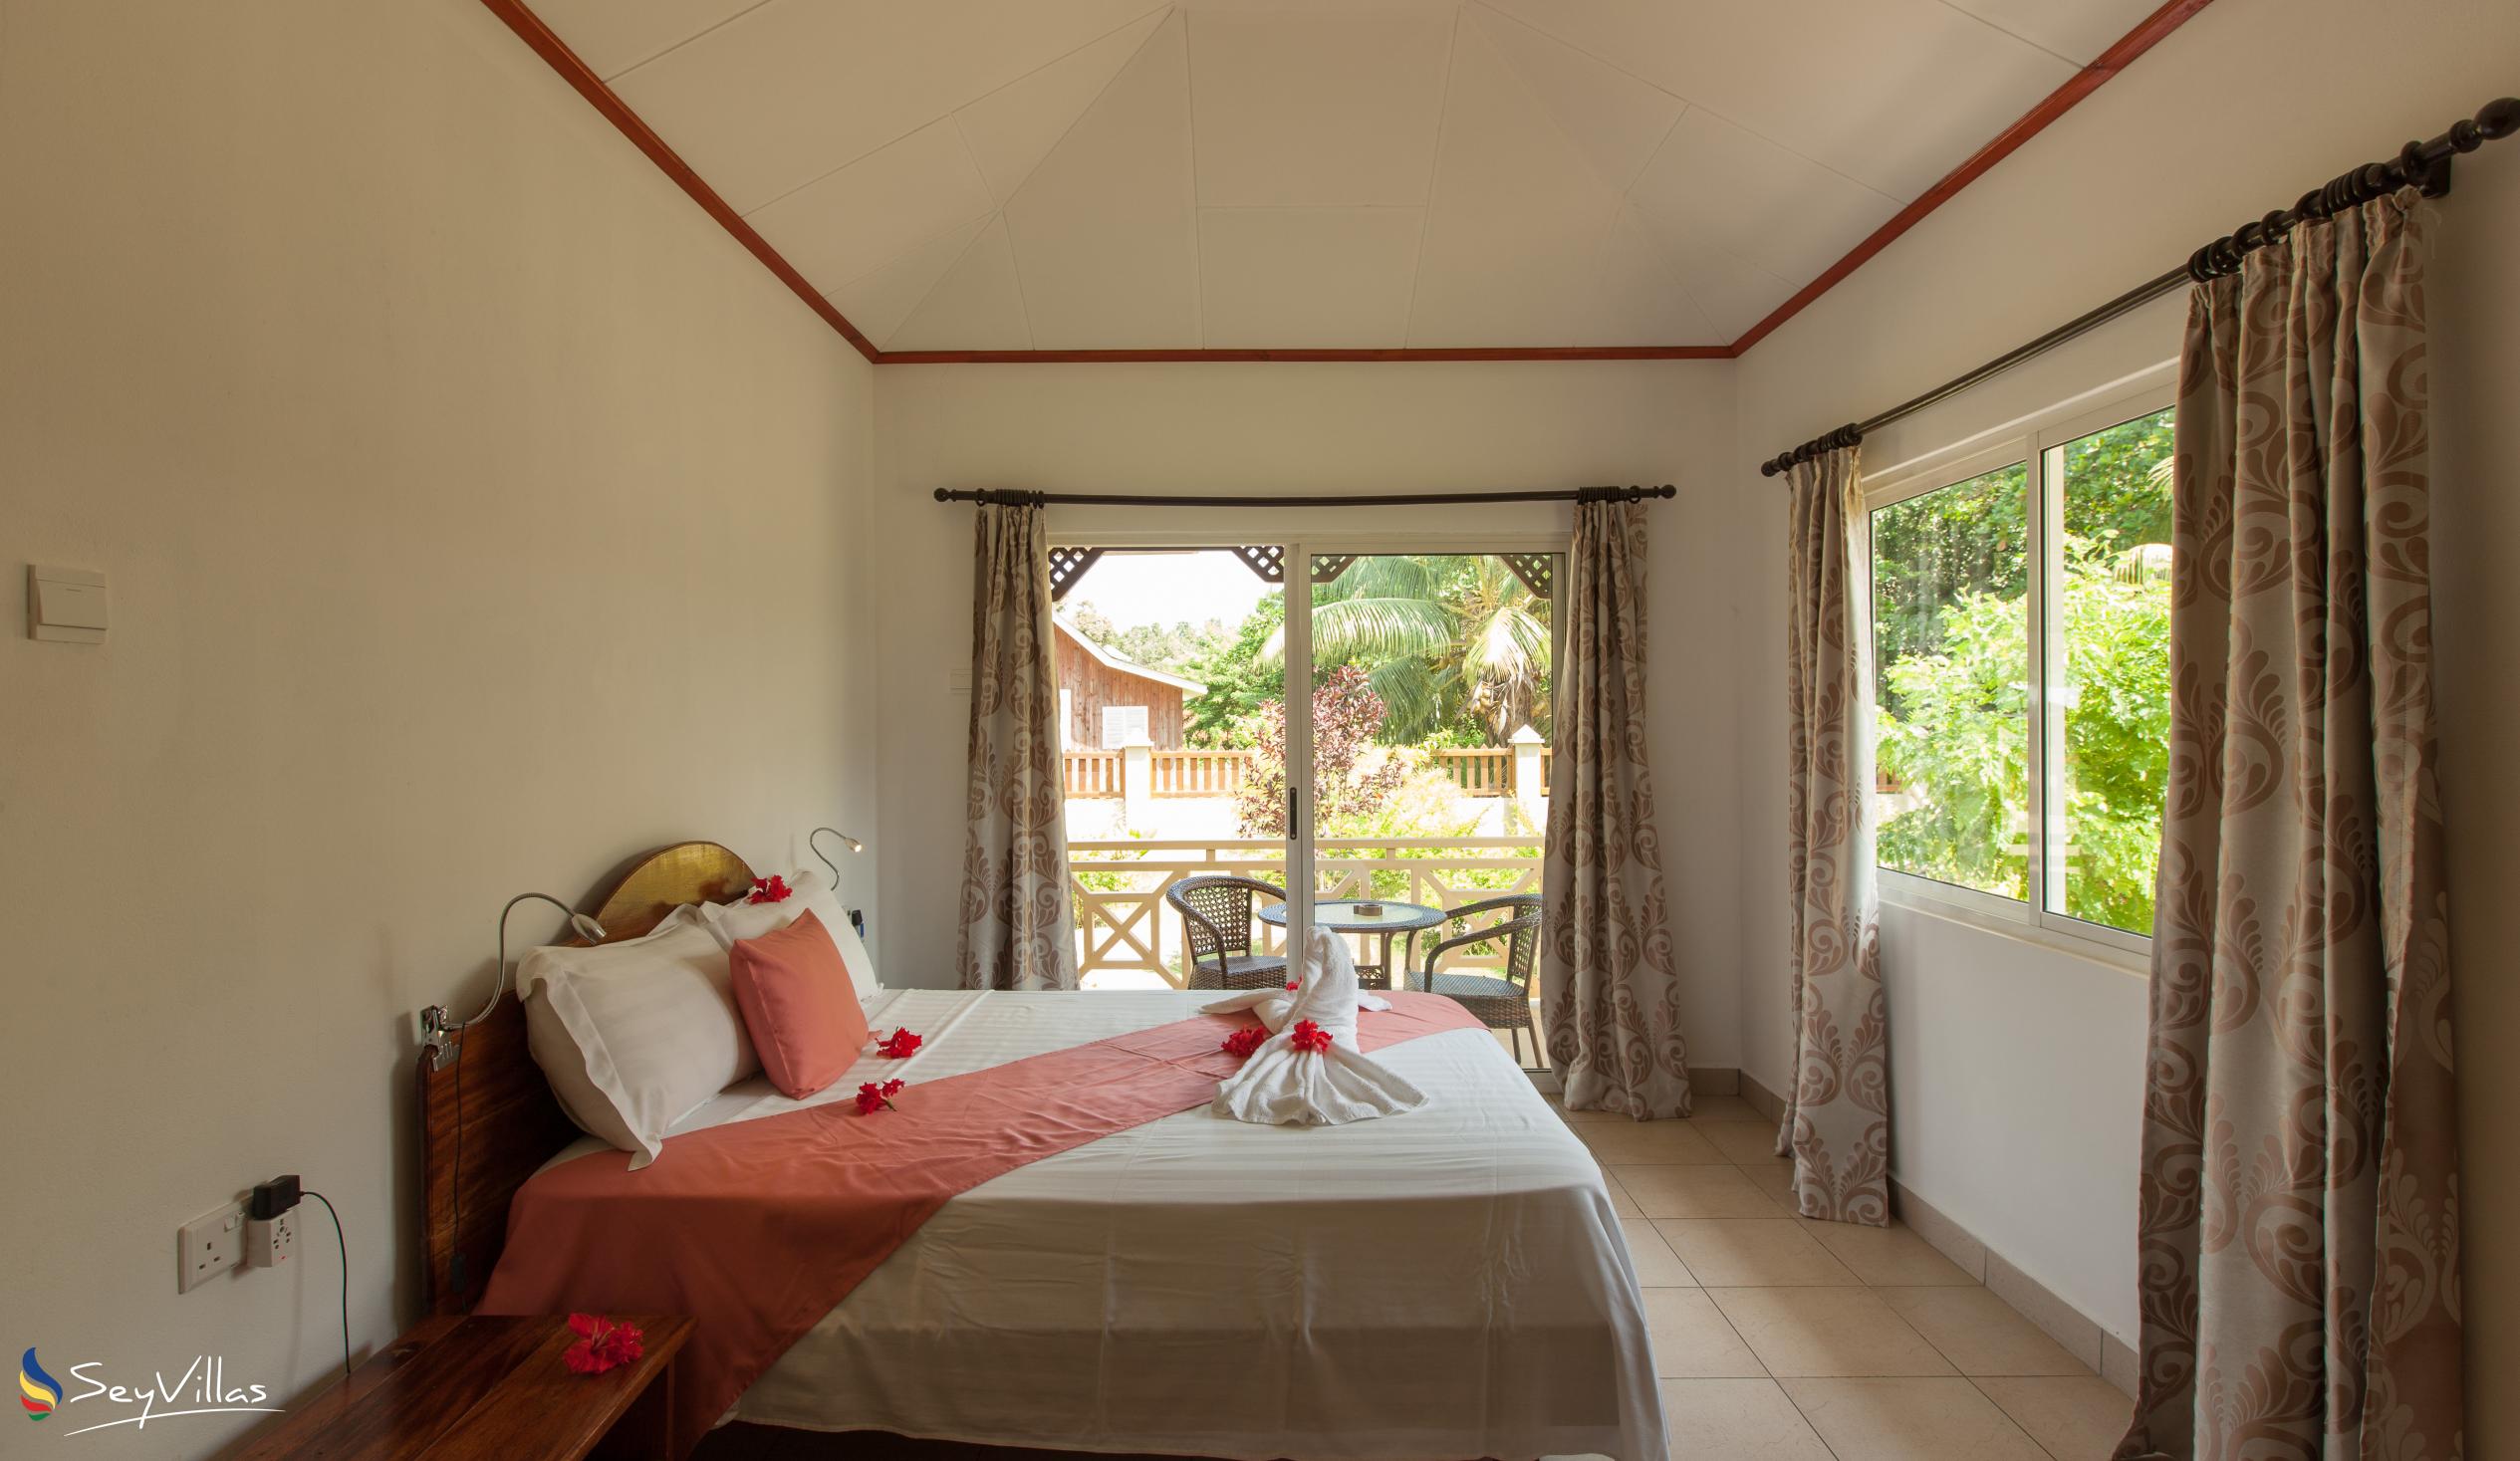 Foto 47: Hostellerie La Digue - Chalet 2 chambres - La Digue (Seychelles)